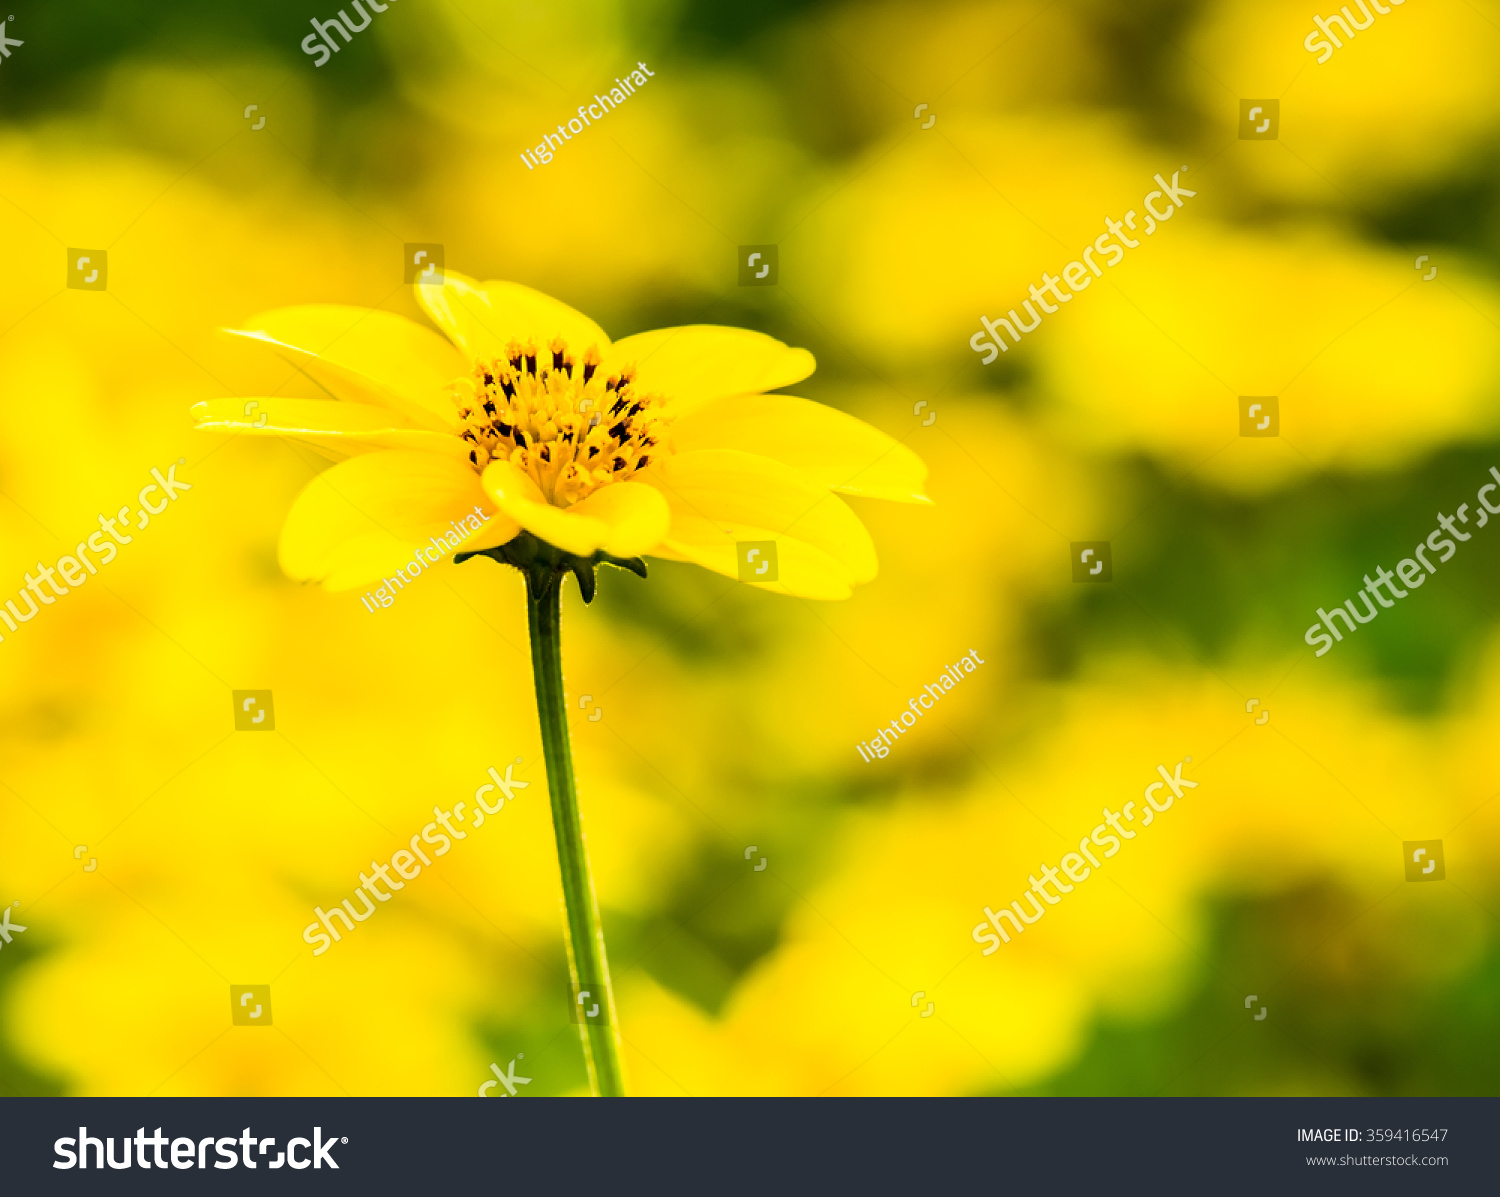 yellow flower in garden #359416547